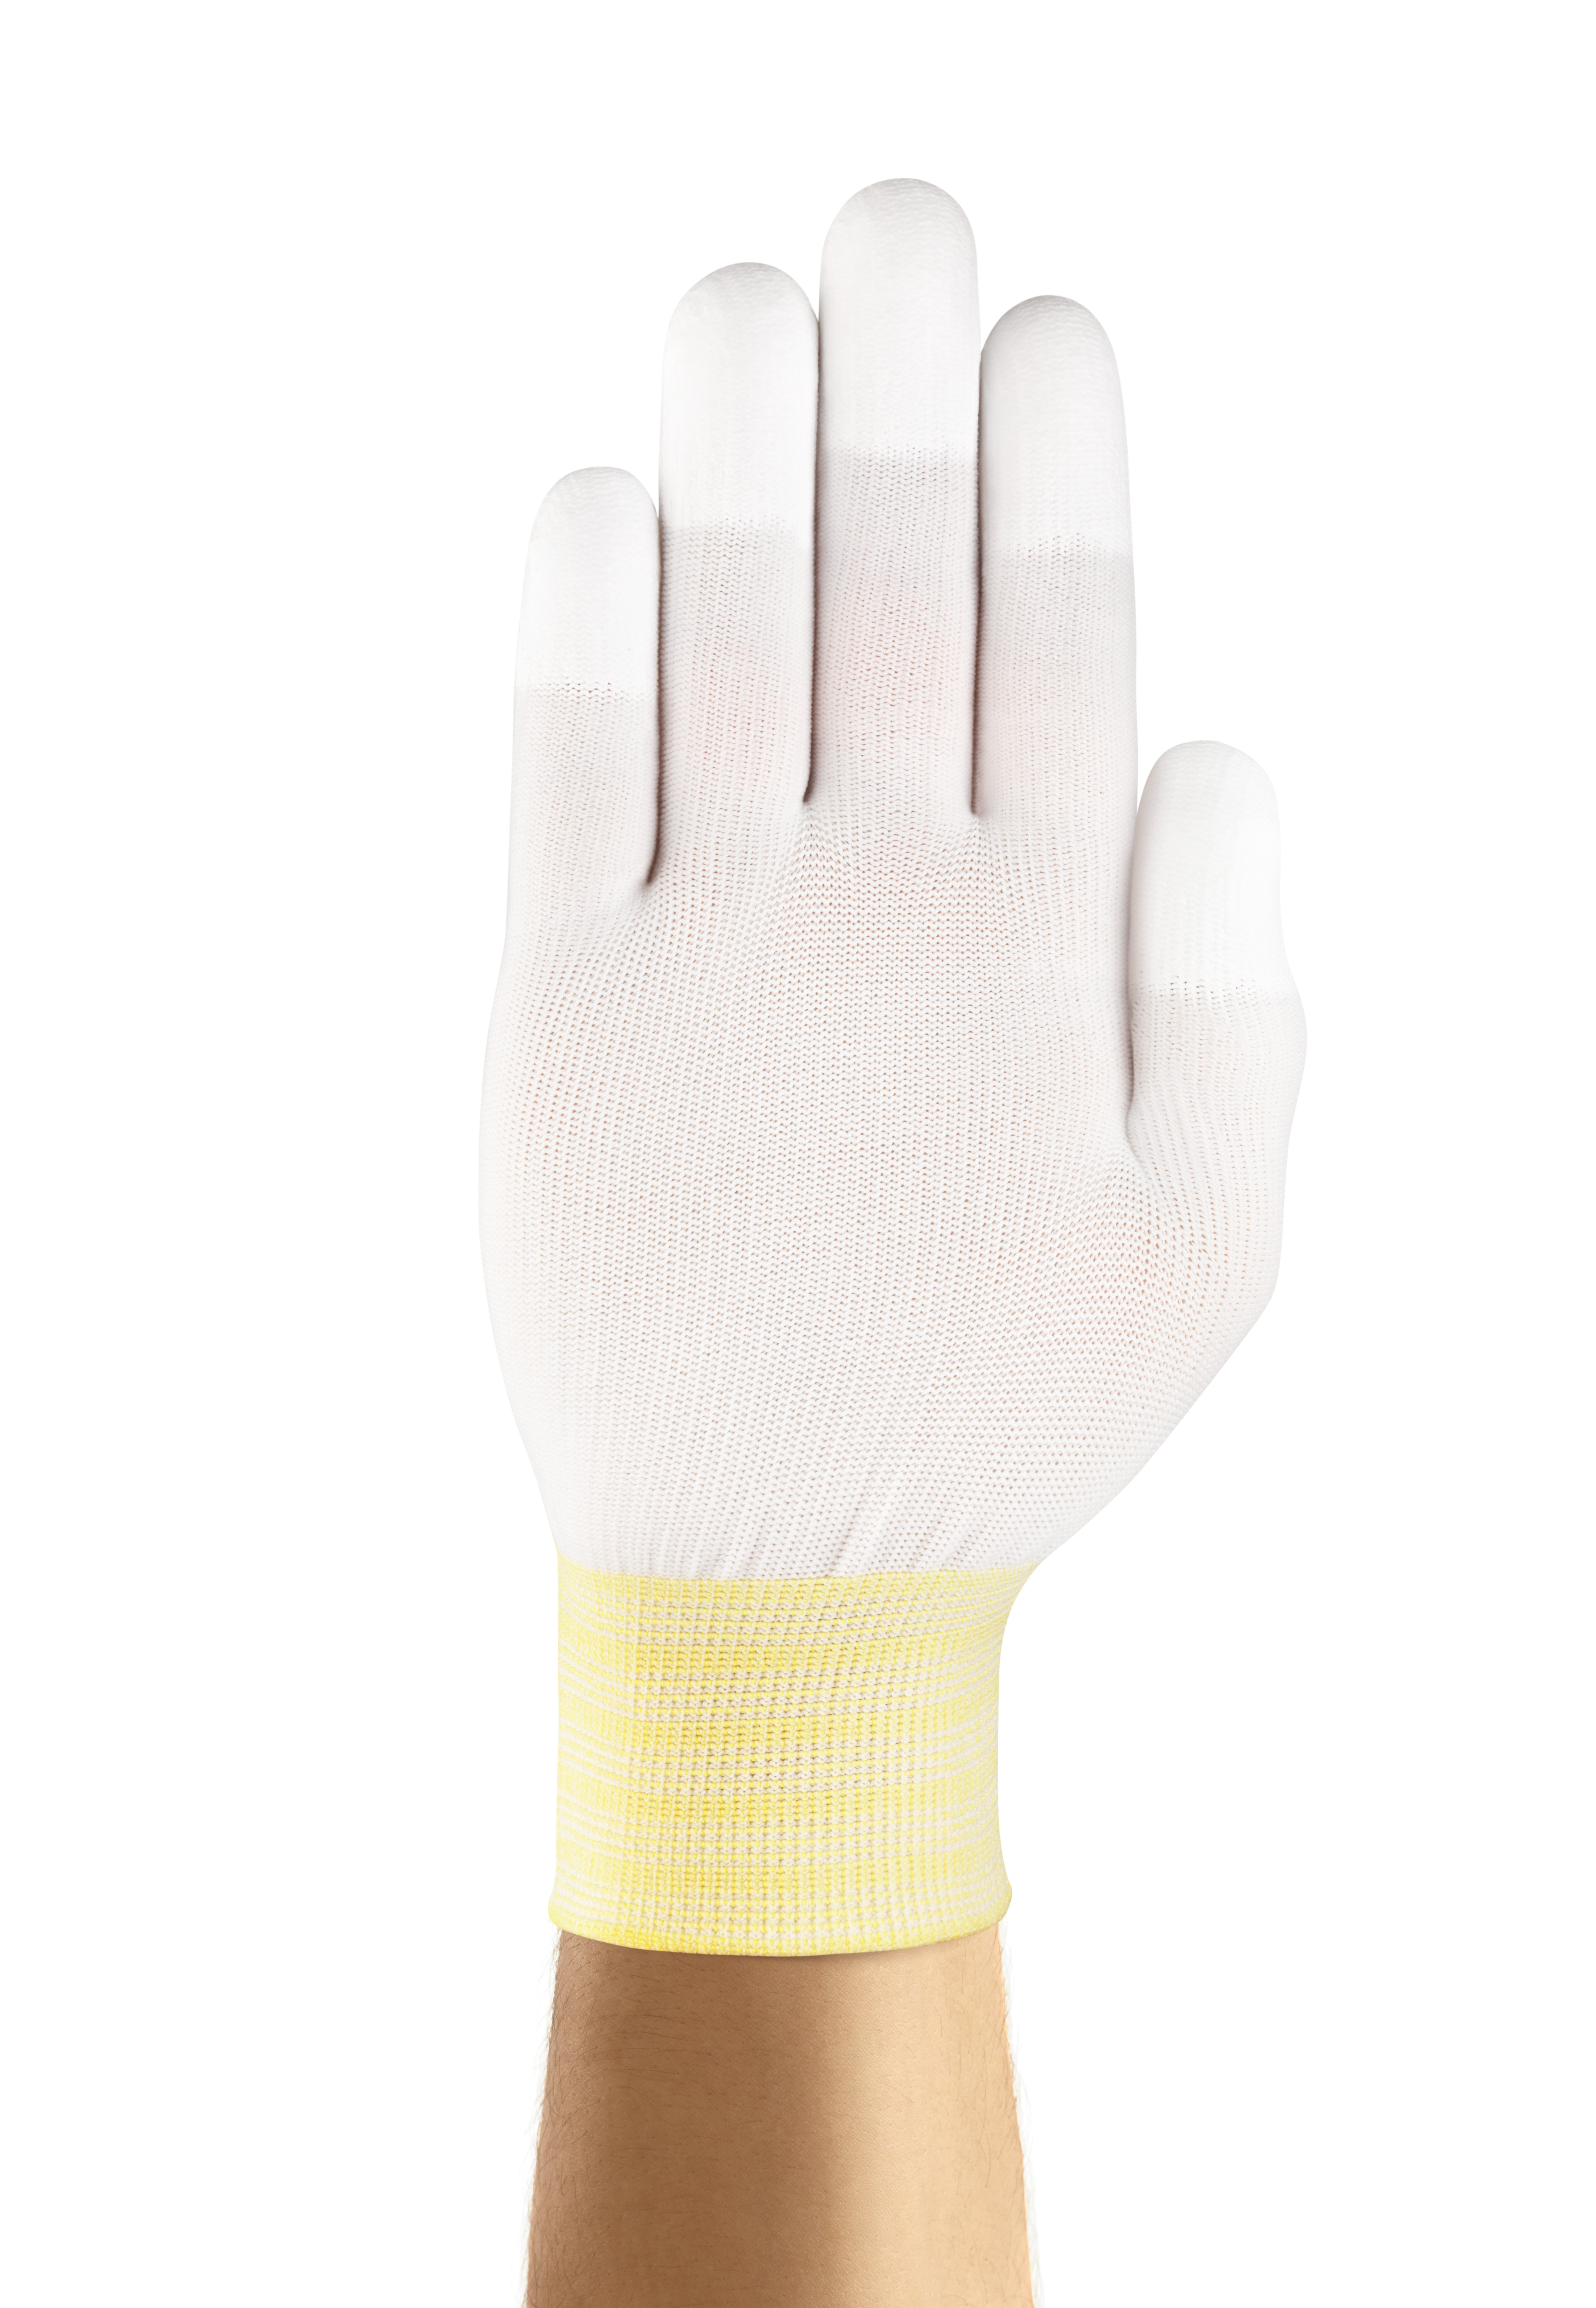 Ansell - Handschuh HyFlex® 11-605 Mehrzweckhandschuh